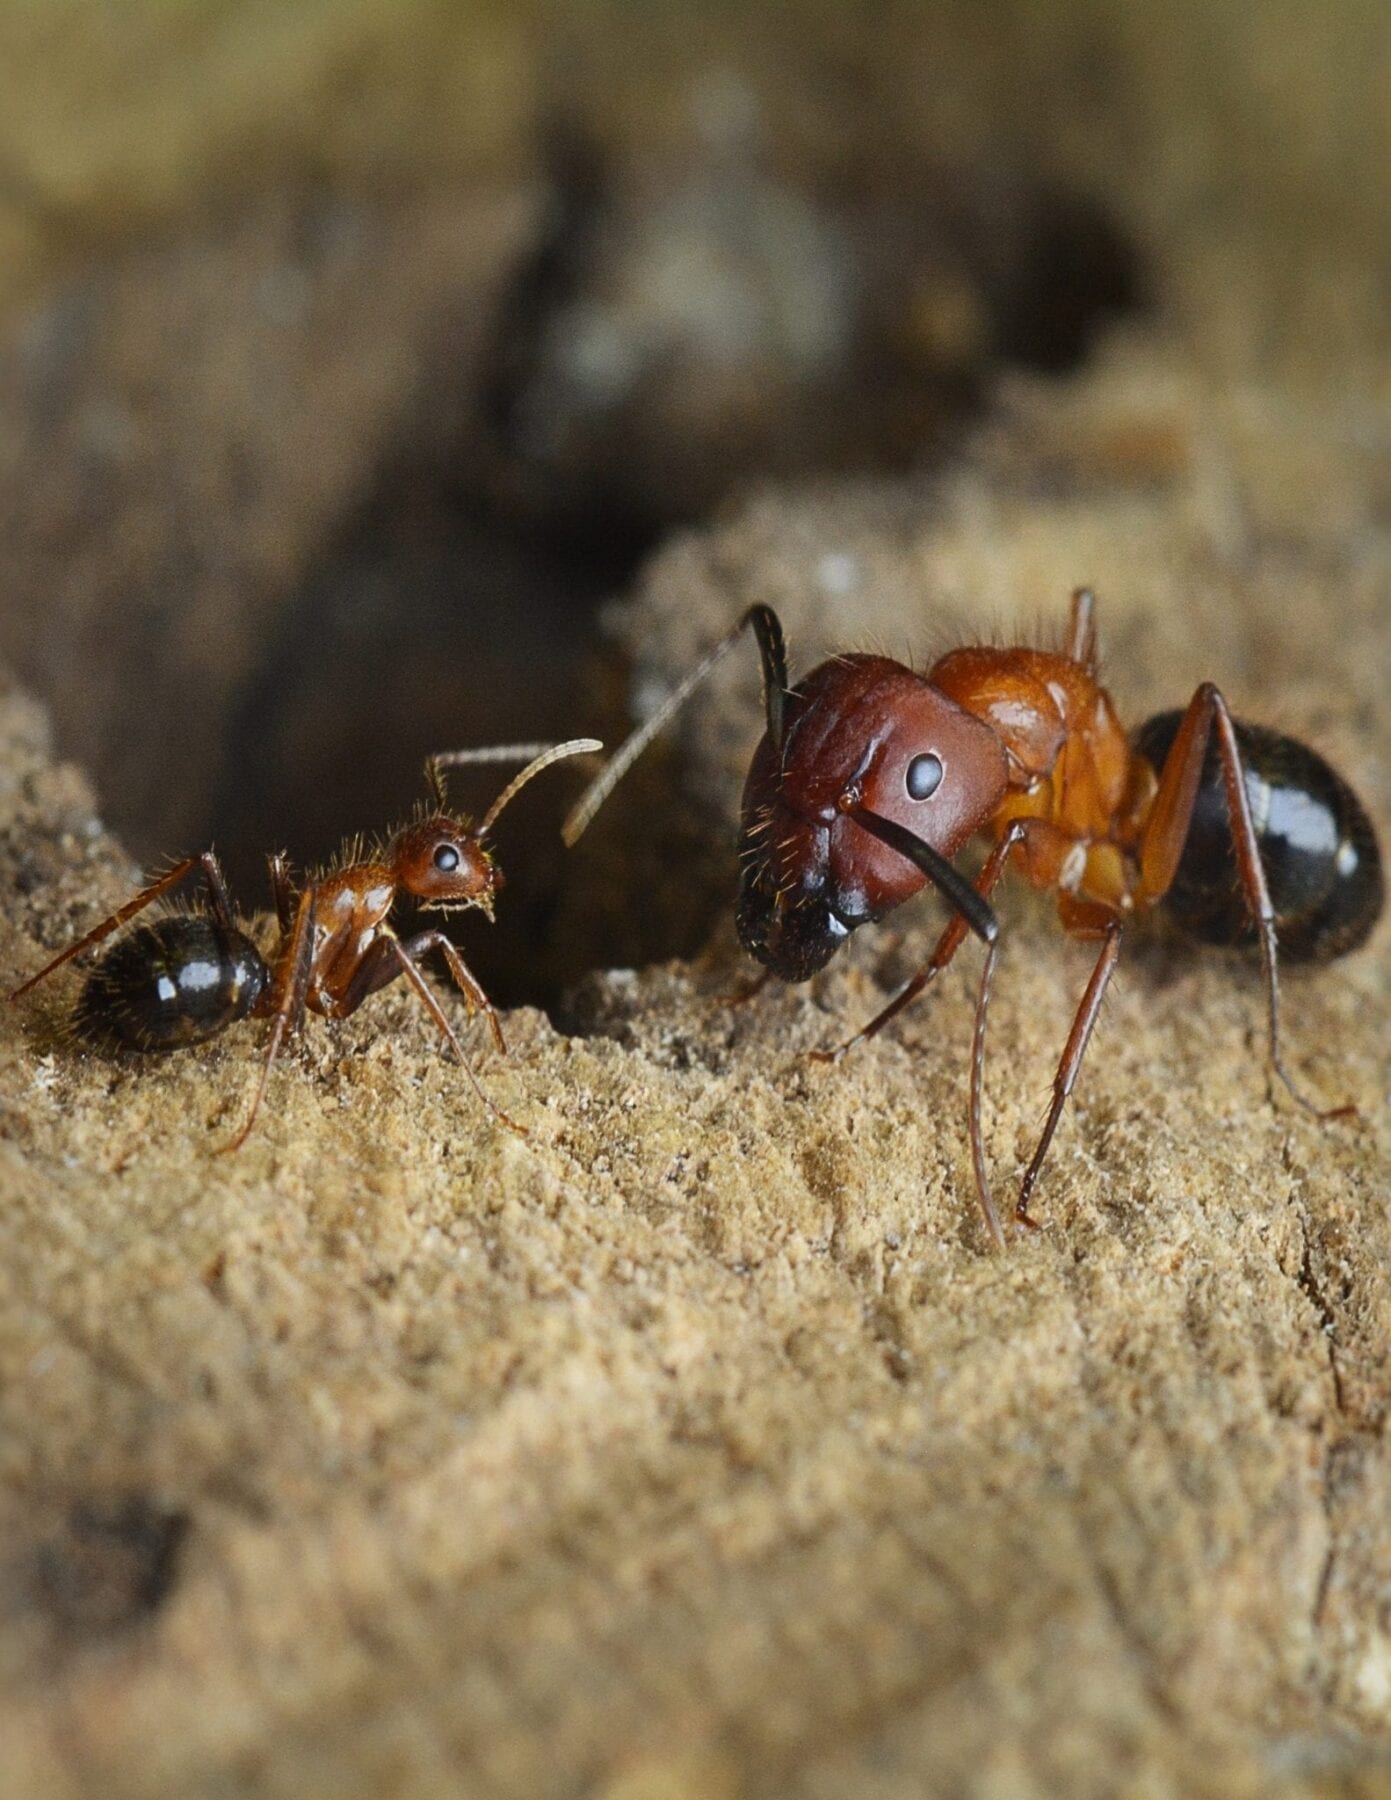 Penn-Led Team Reprograms Social Behavior in Carpenter Ants Using Epigenetic Drugs